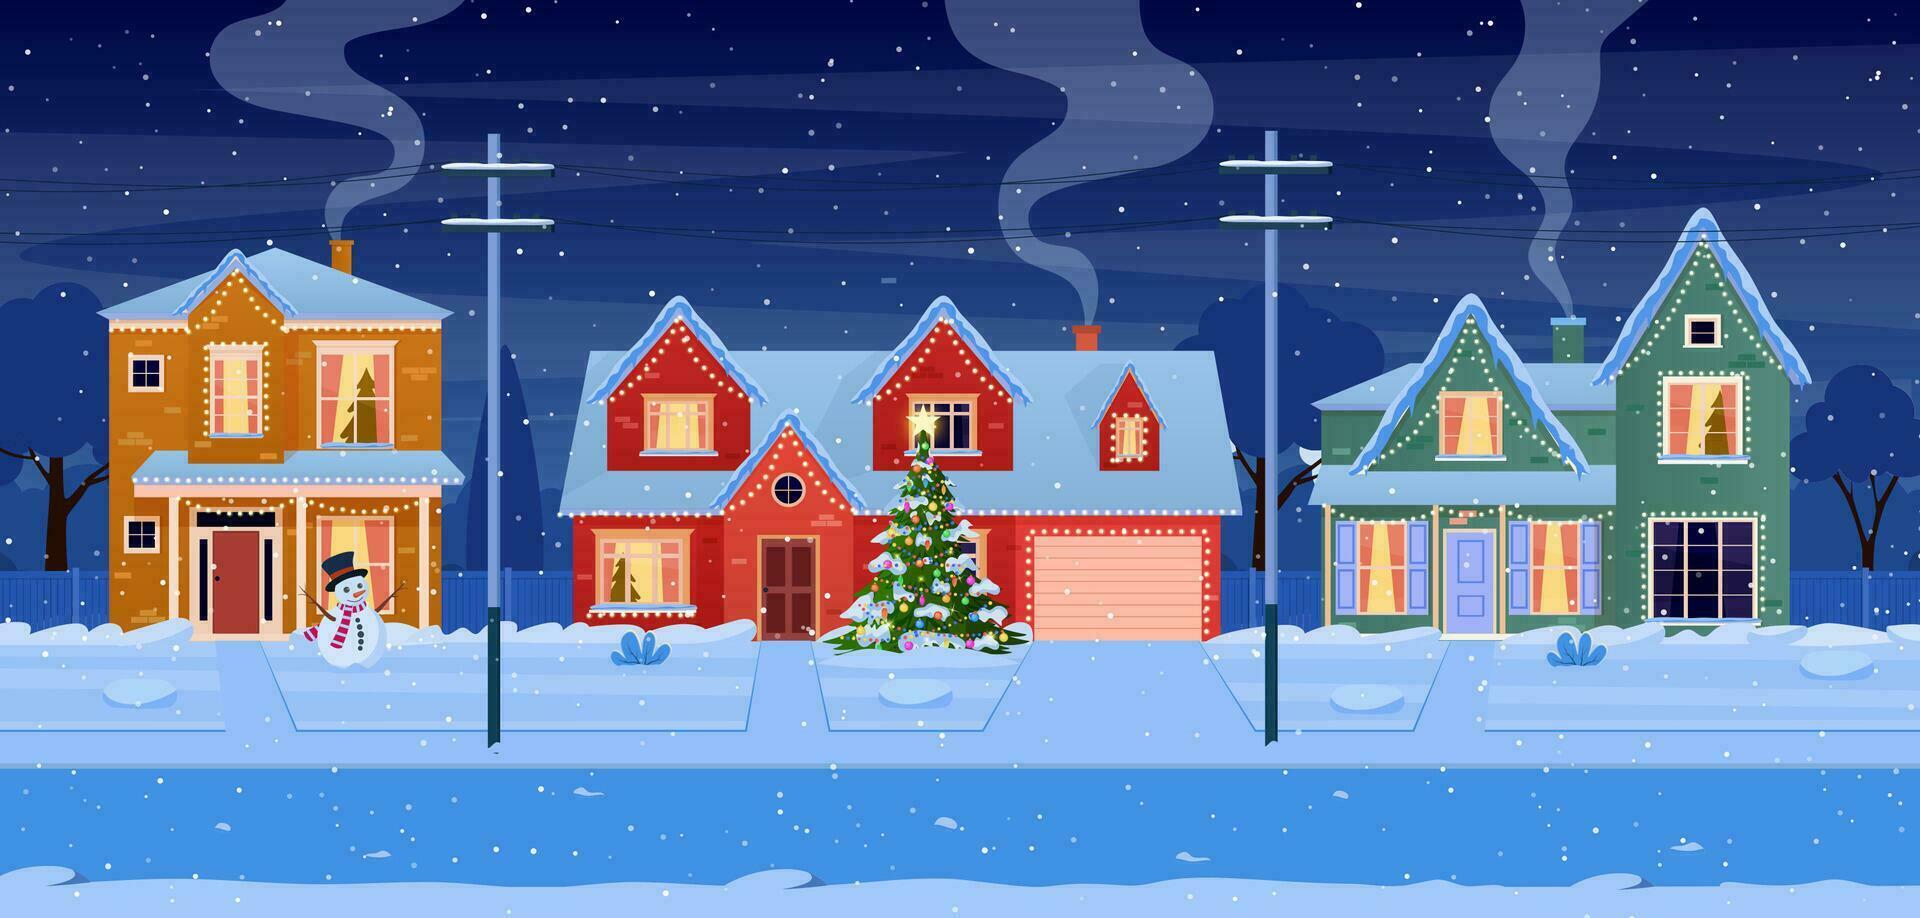 Wohn Häuser mit Weihnachten Dekoration beim Nacht. Karikatur Winter Landschaft Straße mit Schnee auf Dächer und Urlaub Girlanden, Weihnachten Baum, Schneemann. Vektor Illustration